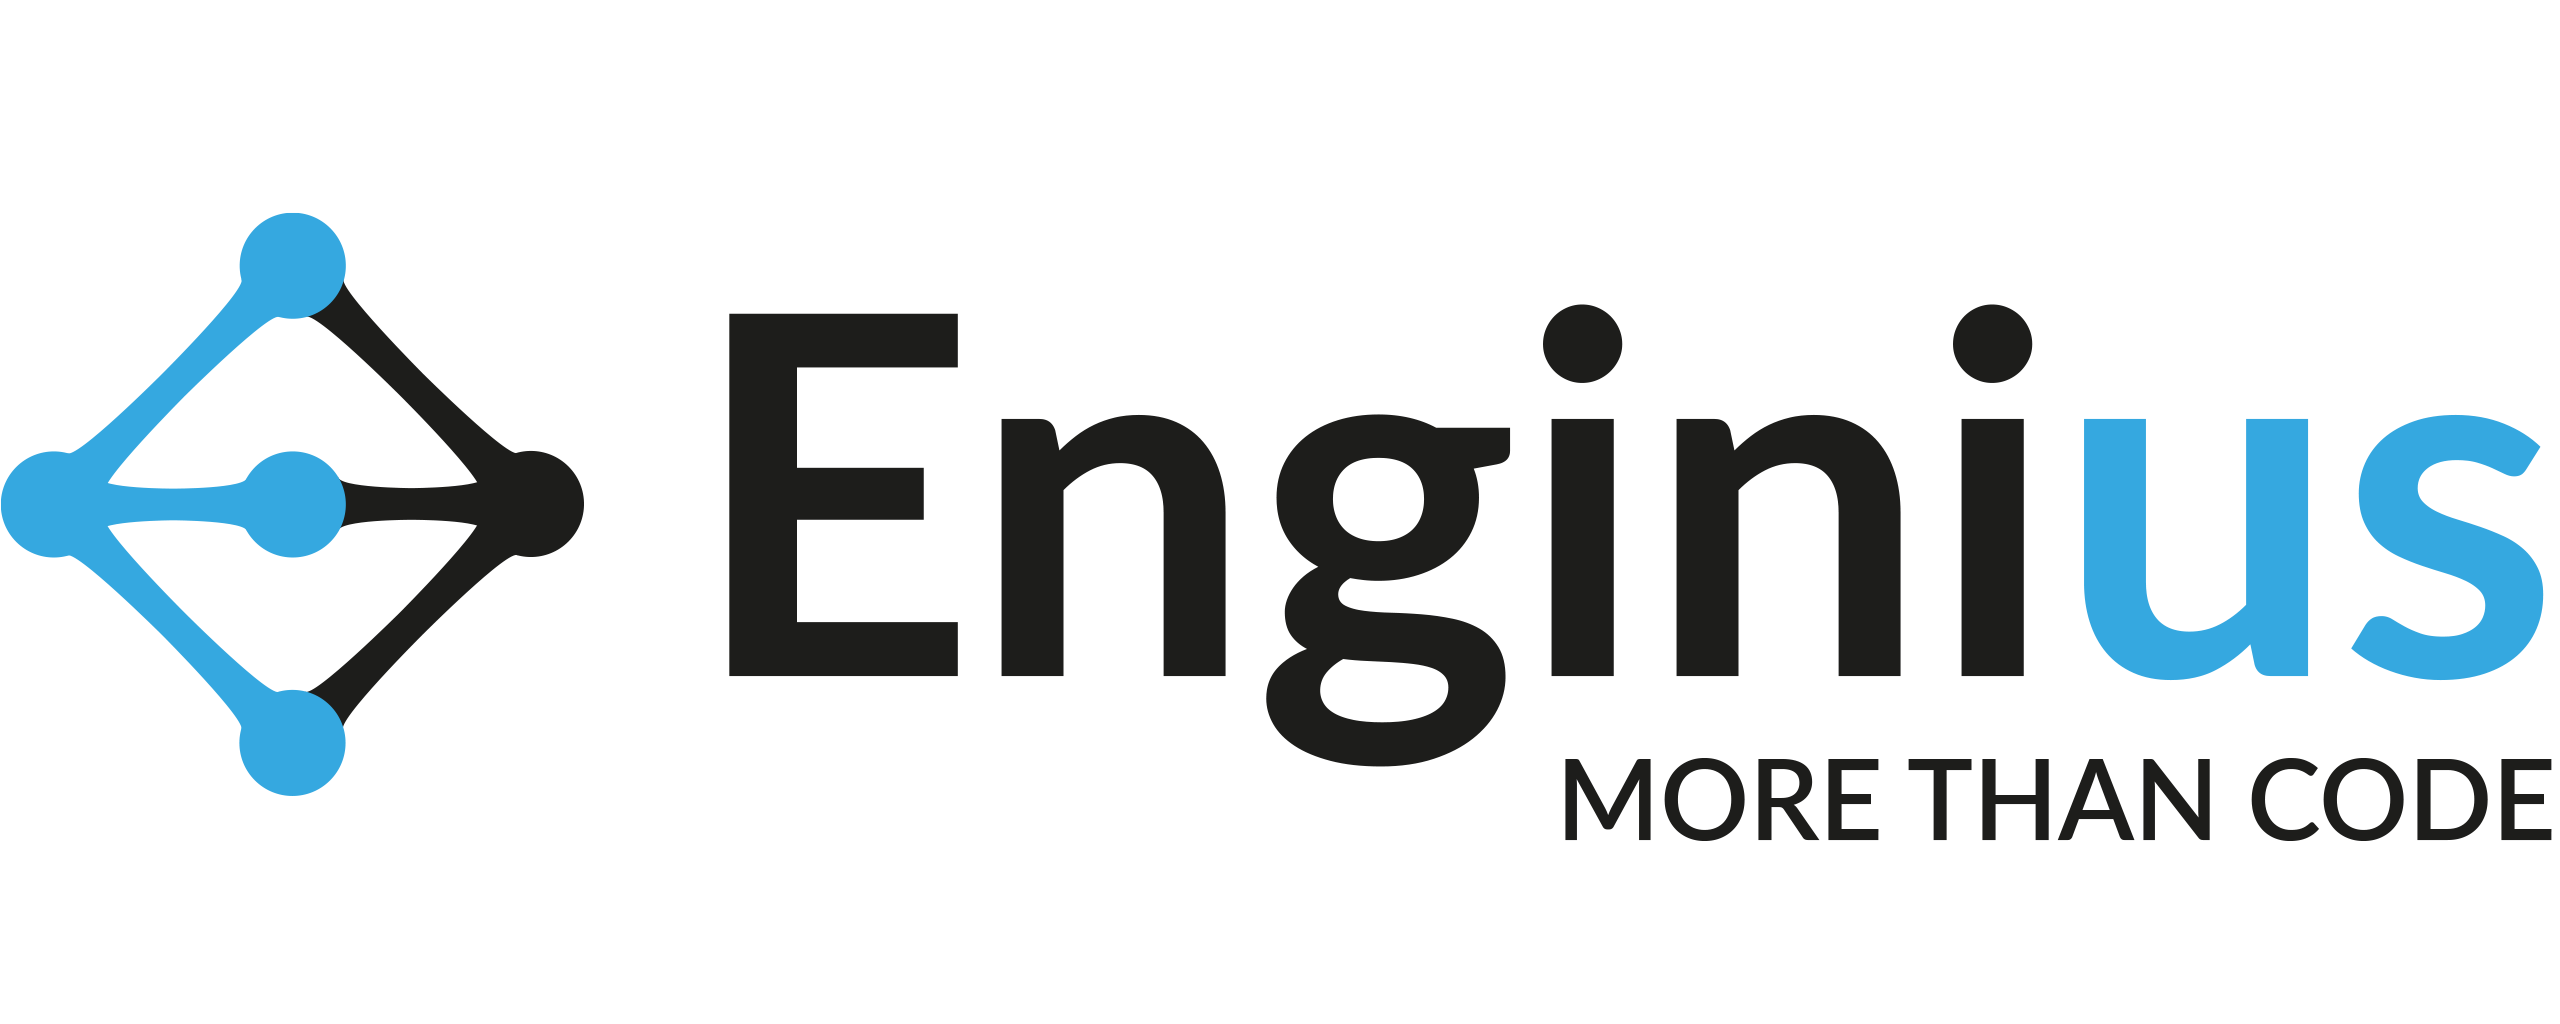 Enginius - More than code